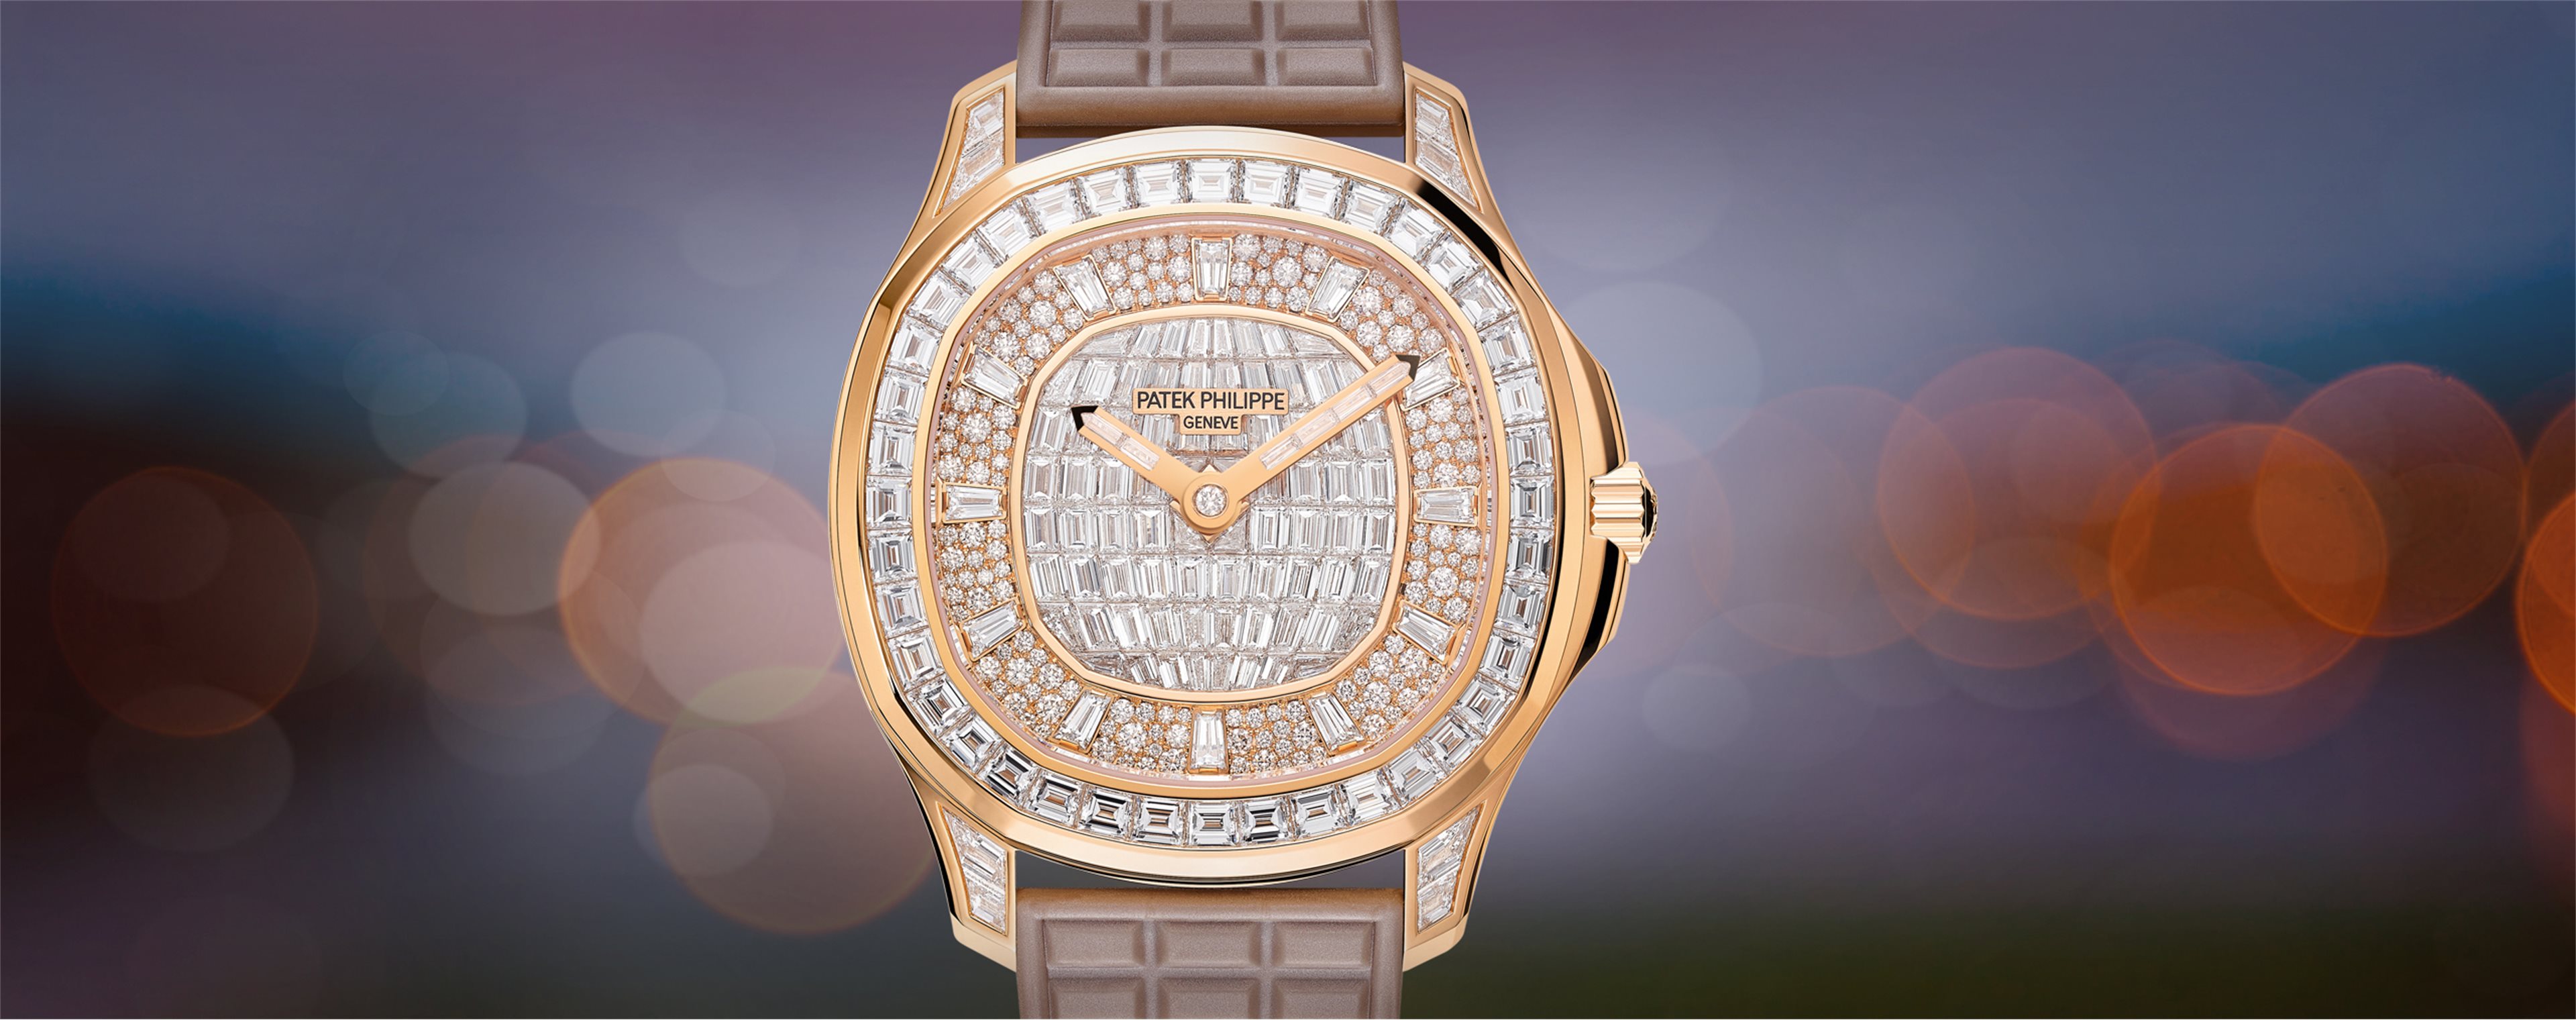 Patek Philippe Nautilus Moon Phase 18K Rose Gold Watch 5712R-001